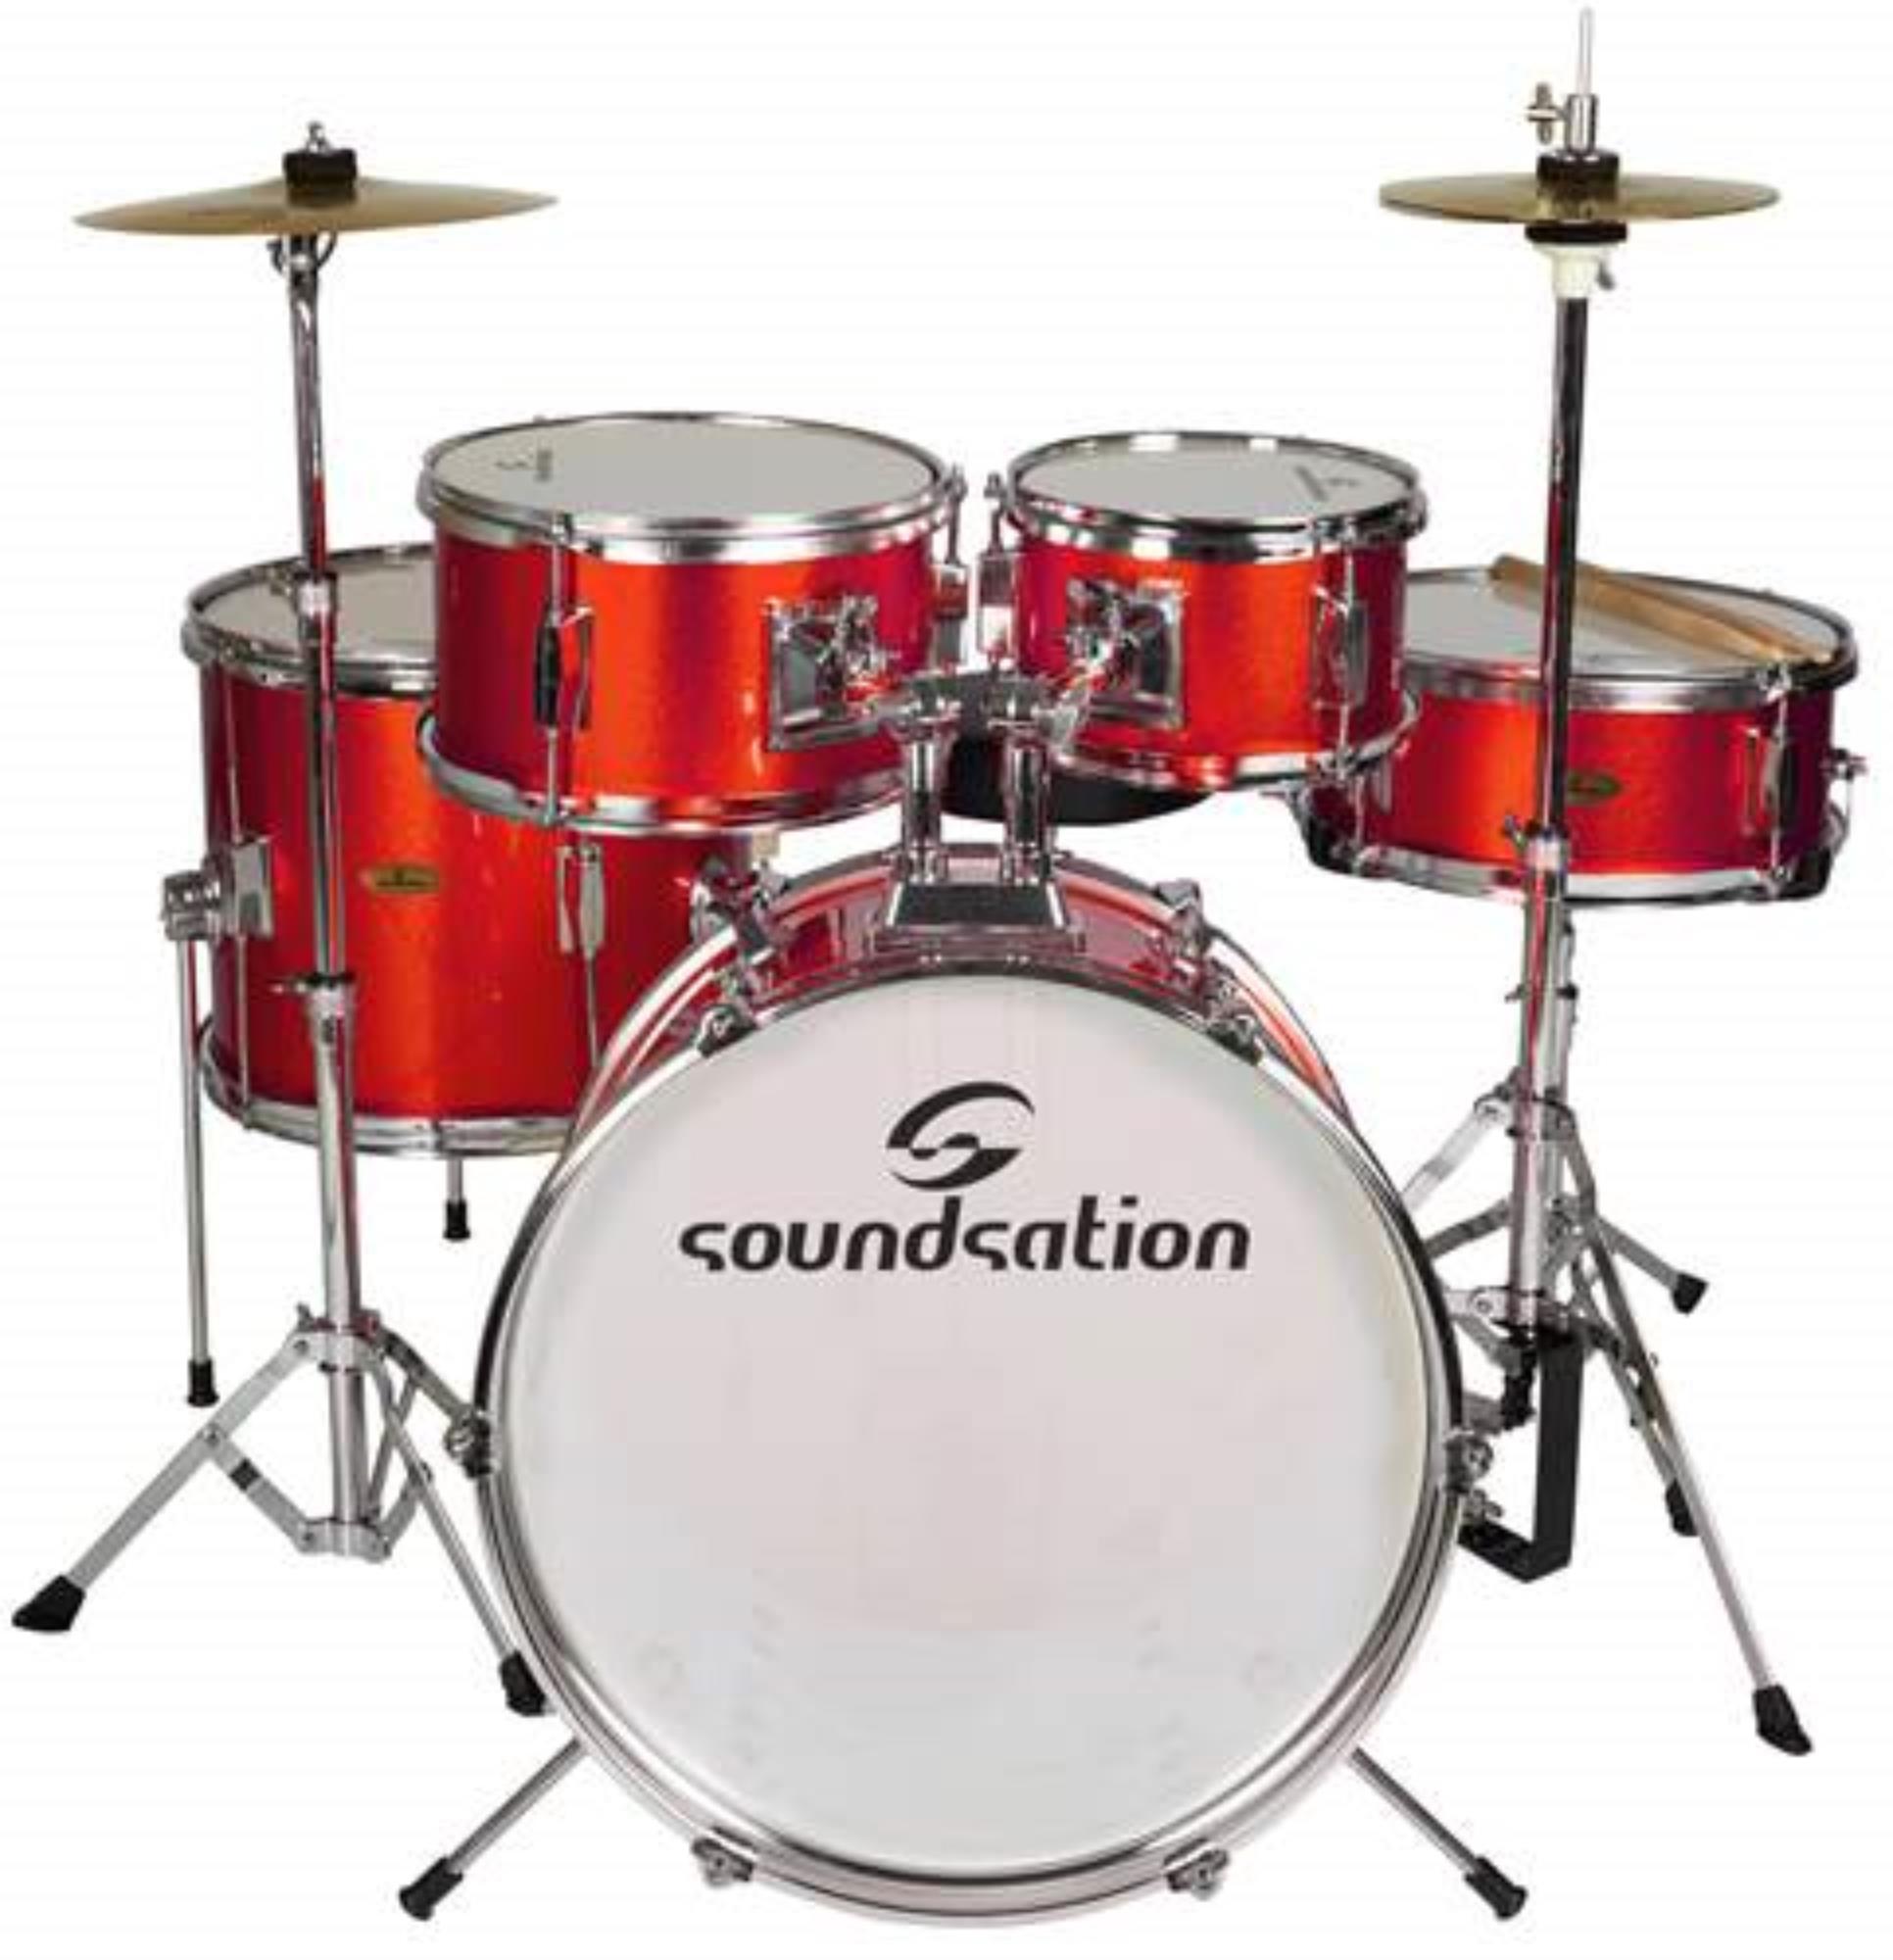 Soundsation Batteria Junior - Drums- Percussions - Acoustic Drums - Kits  (set)